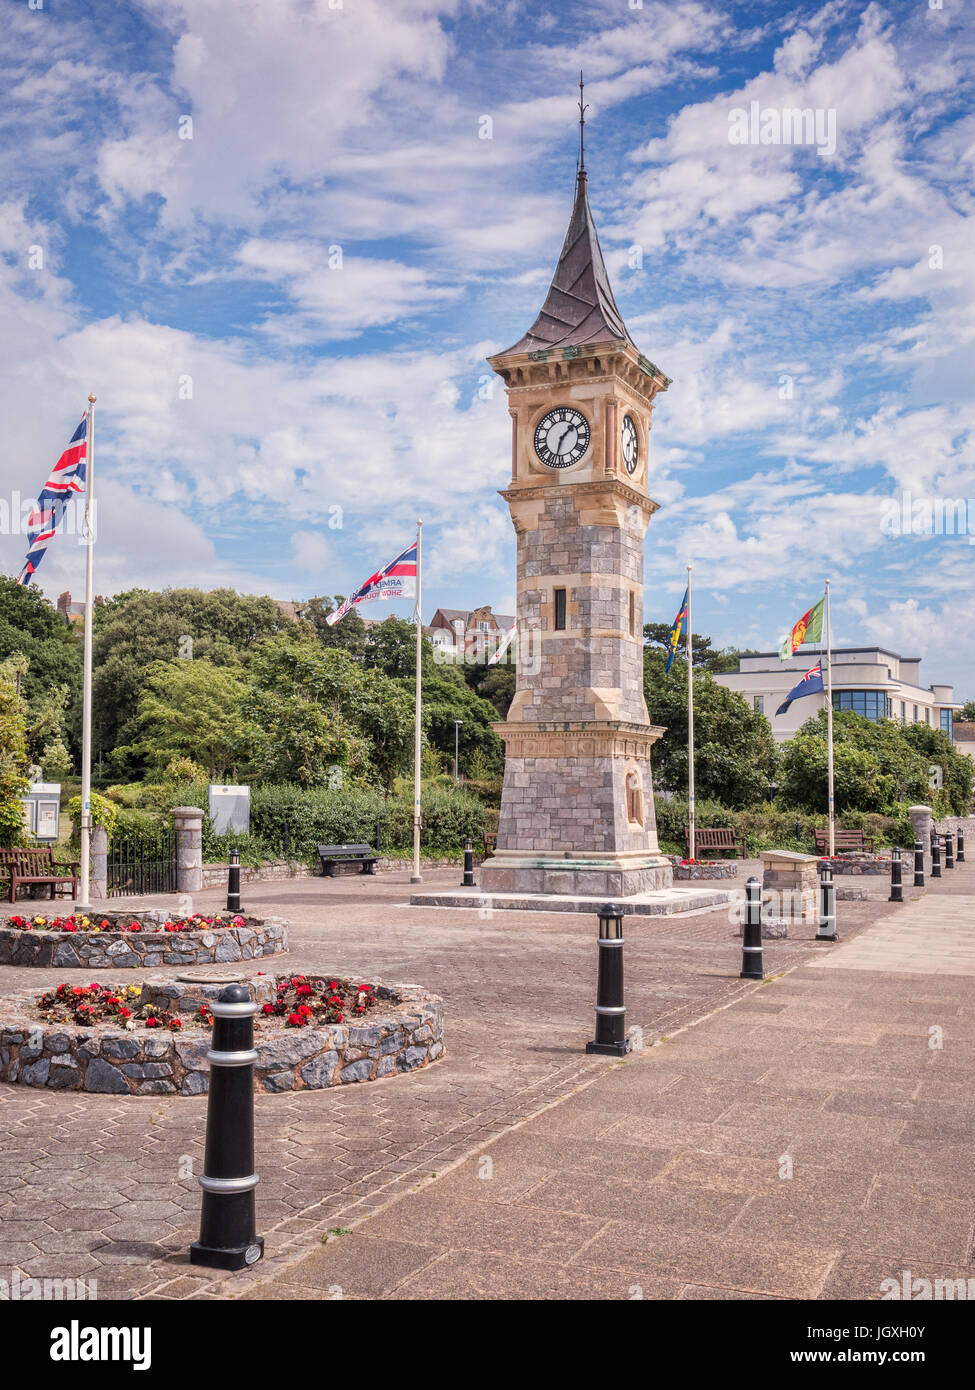 26 de junio de 2017: Exmouth, Devon, Reino Unido - El Jubileo en la explanada de la torre del reloj en Exmouth, Devon, con banderas para el día de las Fuerzas Armadas. Foto de stock